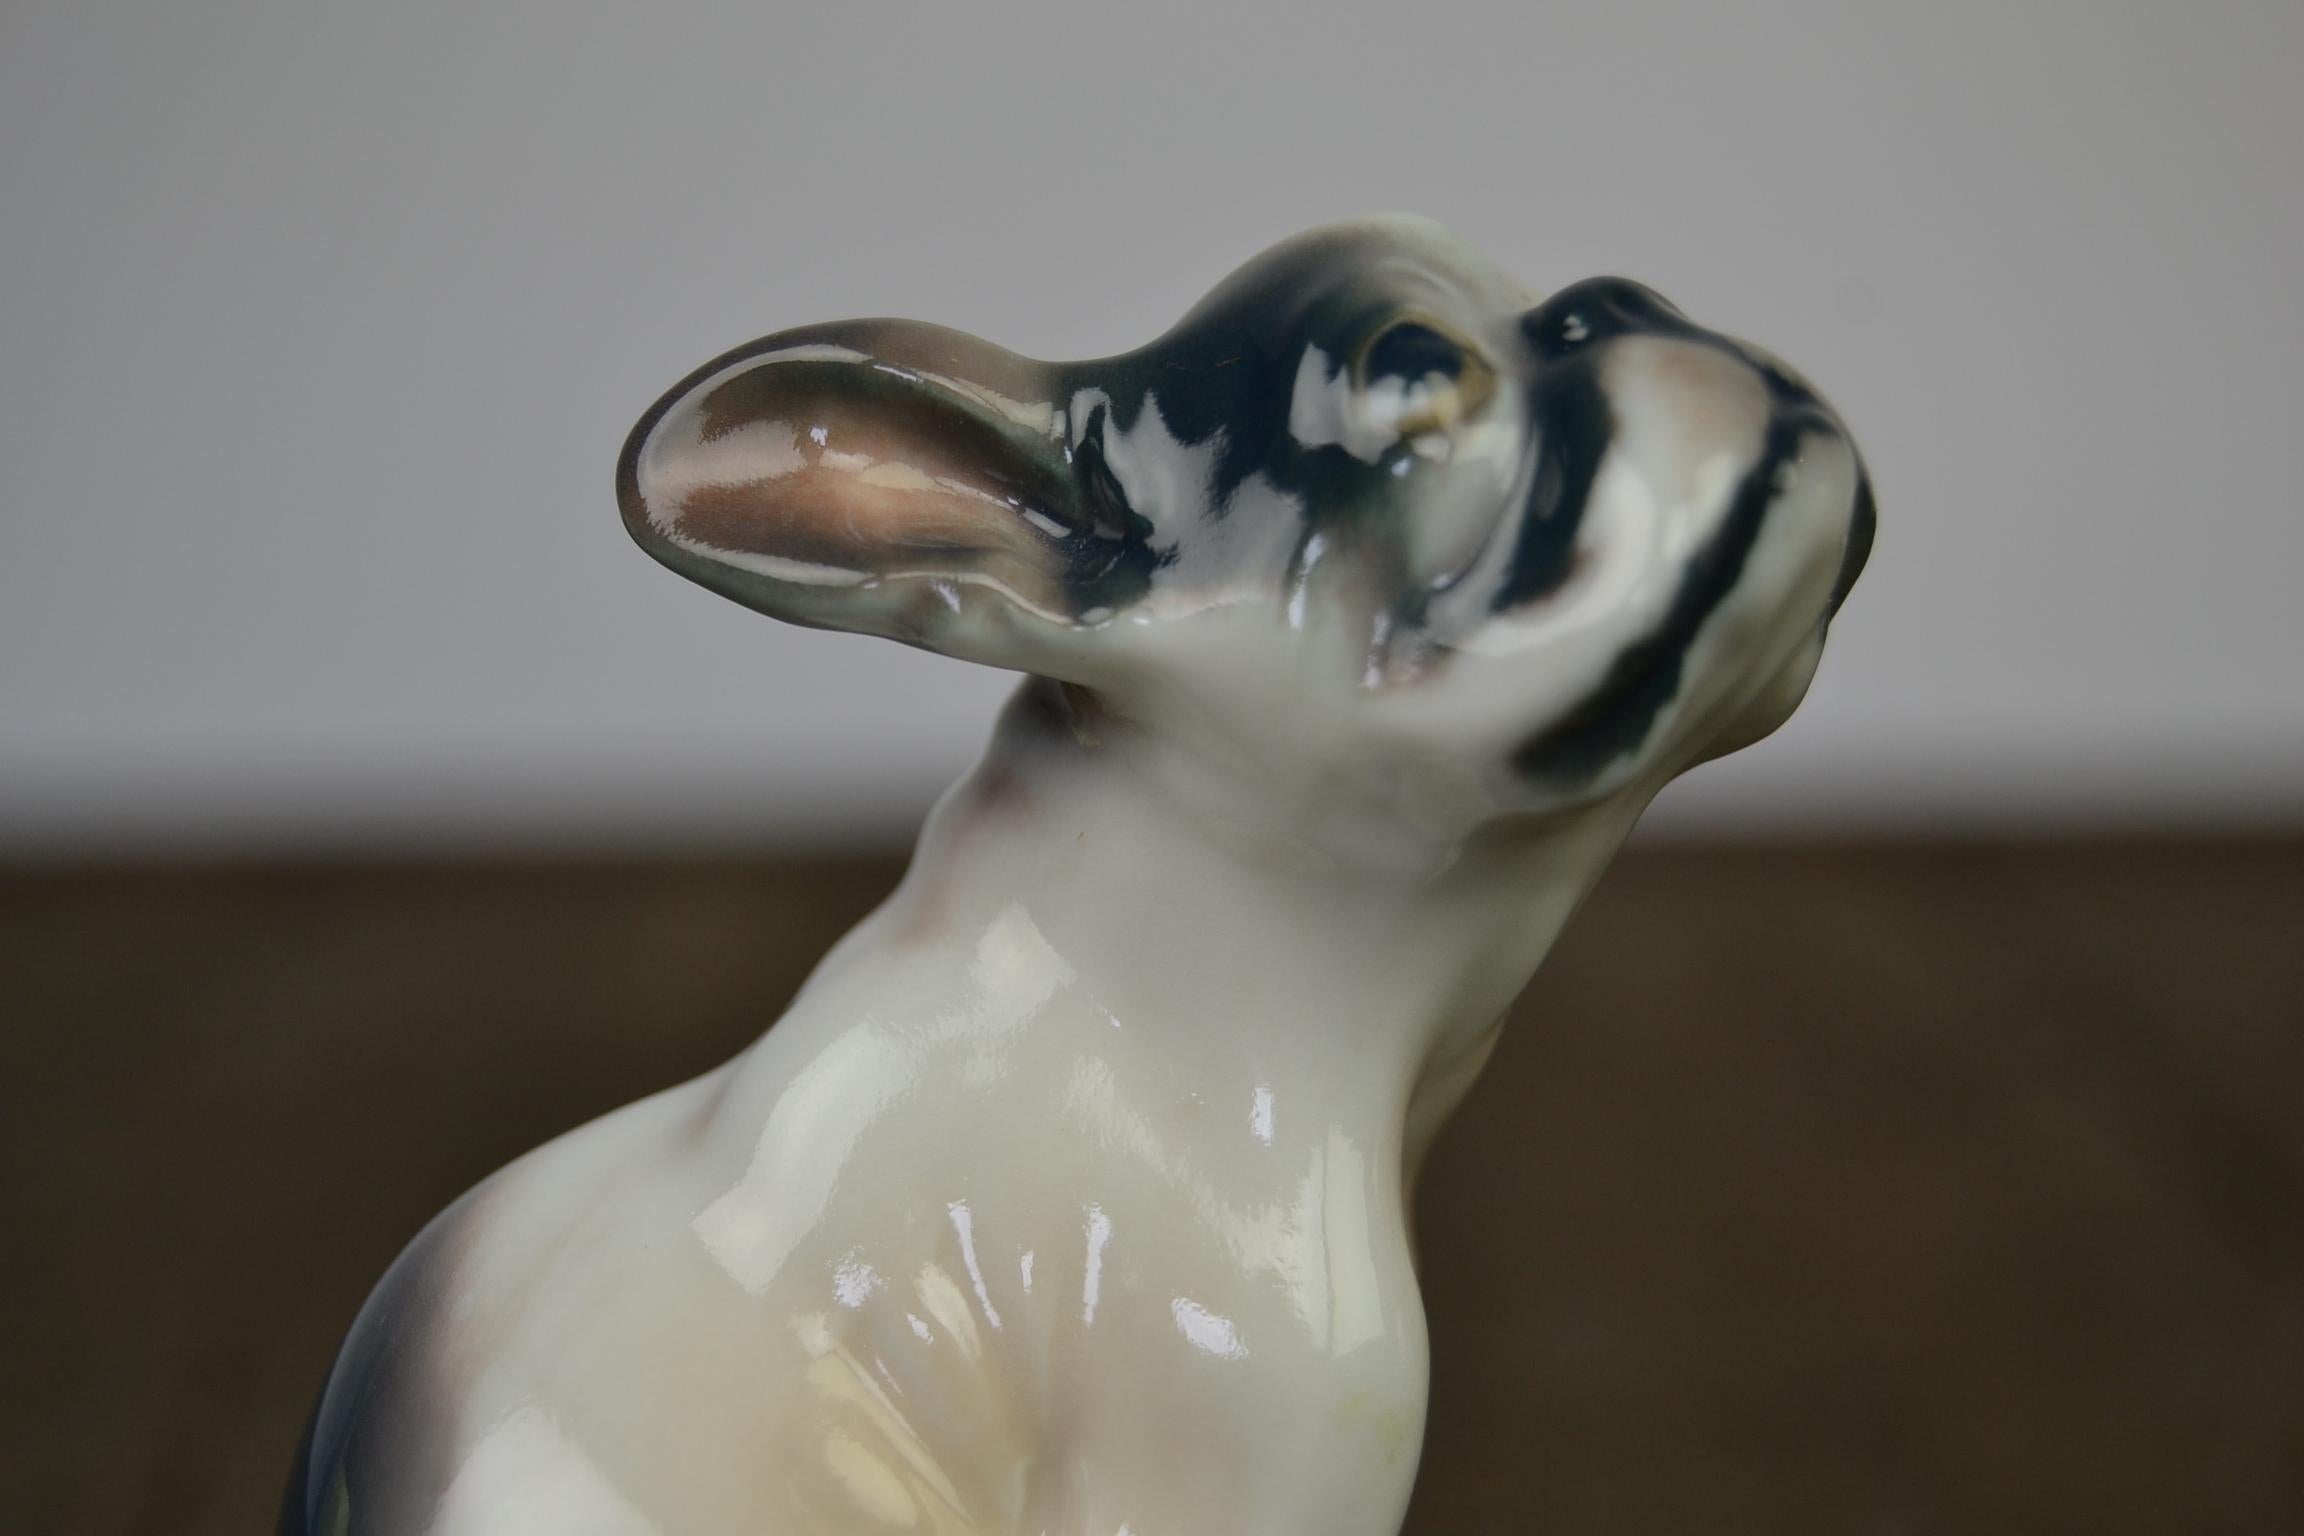 Sculpture de chiot bulldog en porcelaine par Dahl Jensen, Danemark.
Cette figurine de chien en porcelaine de haute qualité avec peinture émaillée date de
des années 30.
Elle a été conçue par le sculpteur danois Dahl Jensen pour Copenhagen Denmark